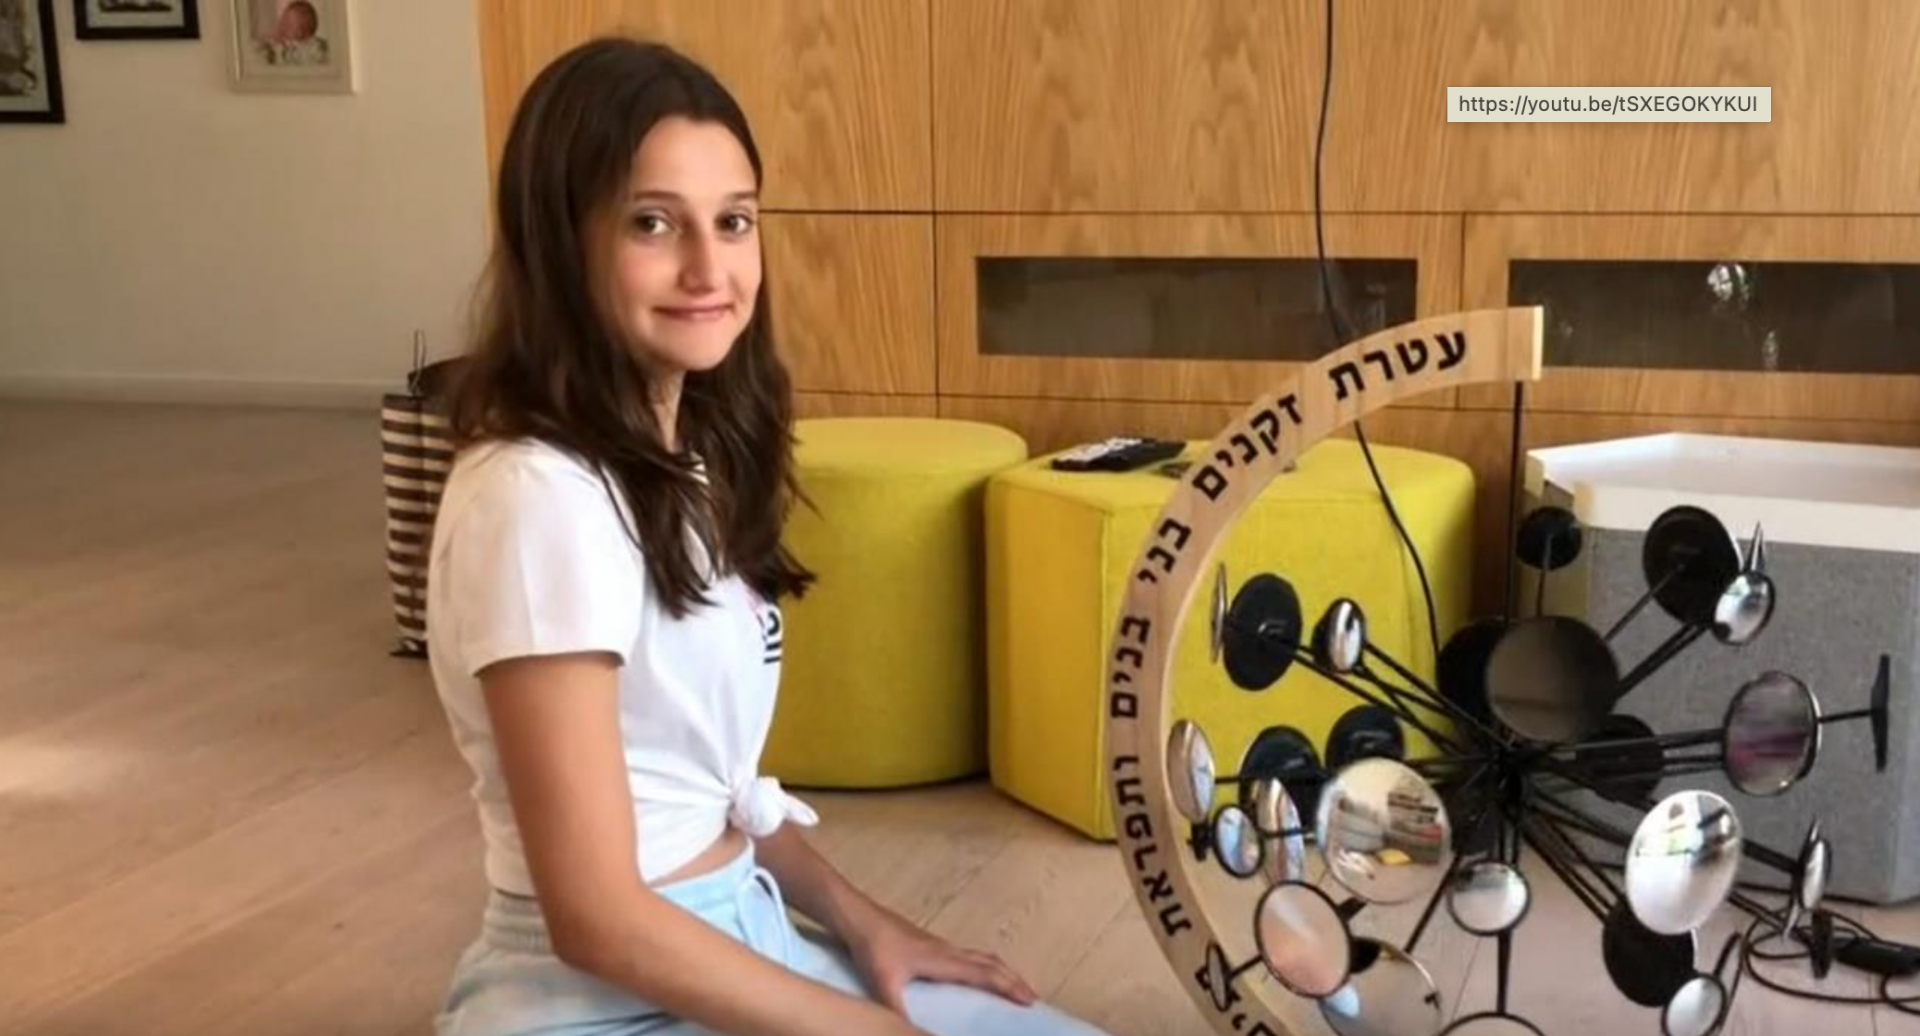 יצירה של התלמידה אסתי מלצר בלאו בתכנית סיפור משפחתי 2021. אנו- מוזיאון העם היהודי